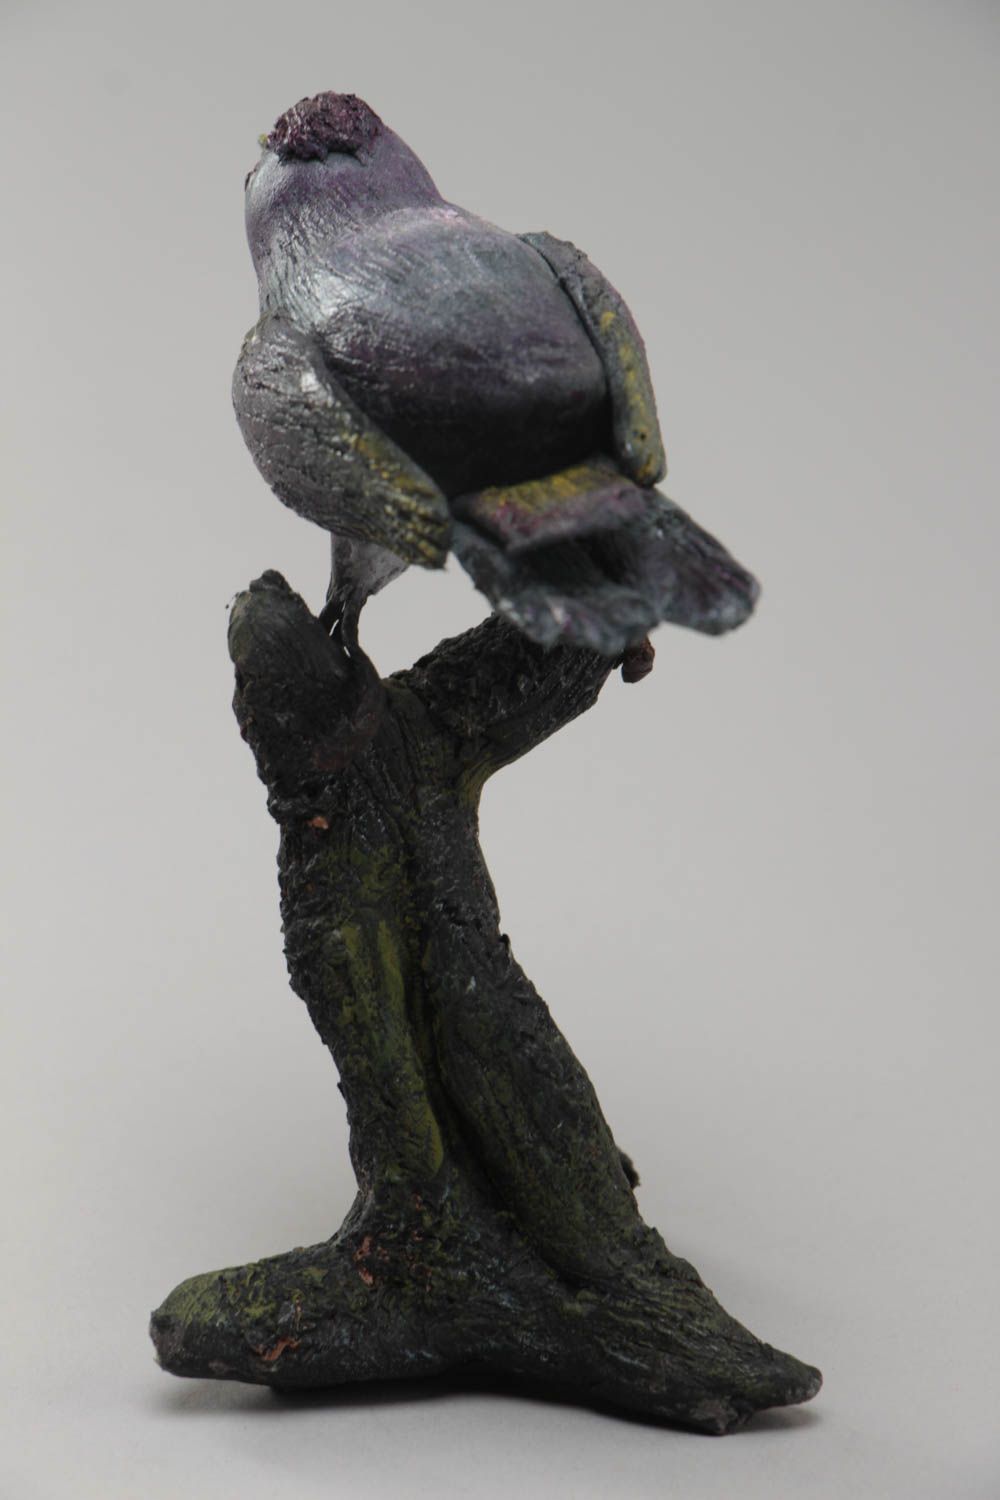 Фигурка птицы из полимерной глины на дереве небольшая красивая ручной работы фото 4